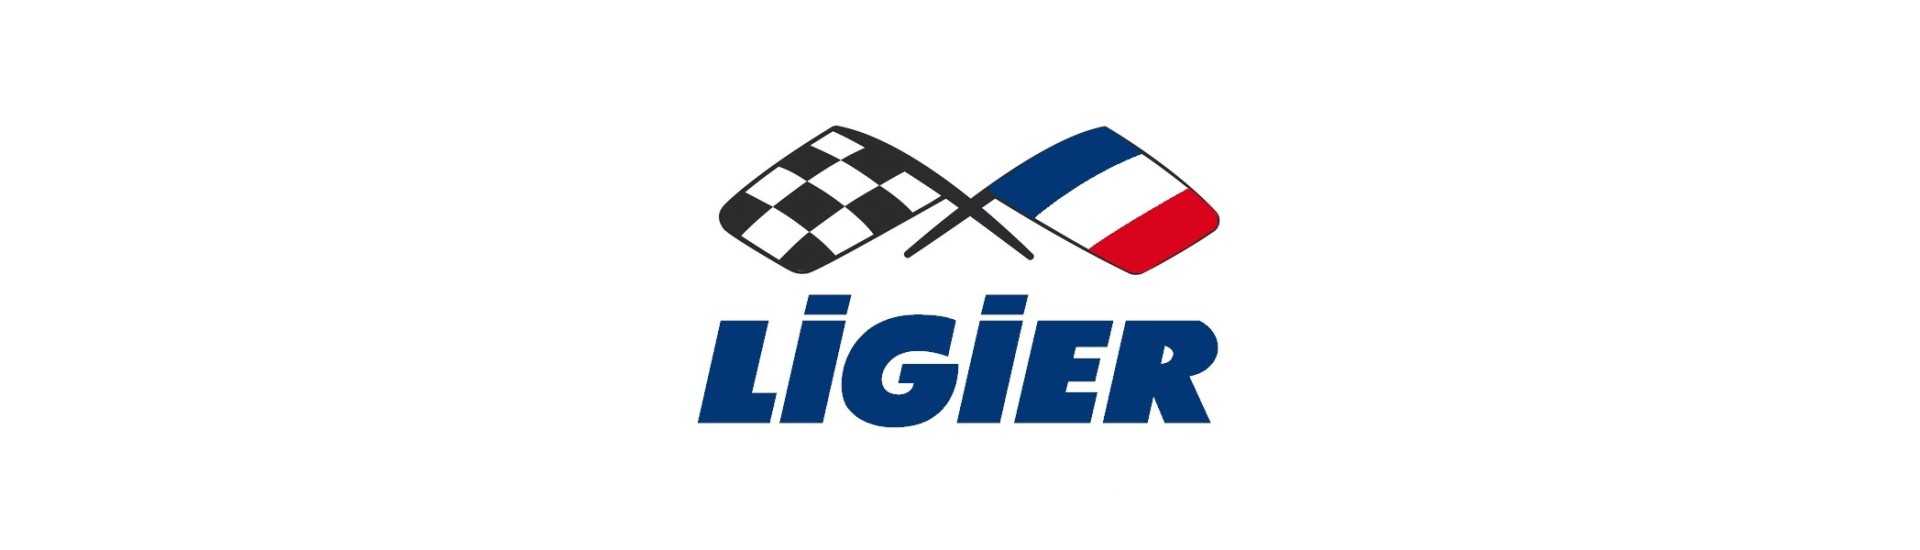 Bremsdichte Rohr zum besten Preis für Auto ohne Lizenz Ligier